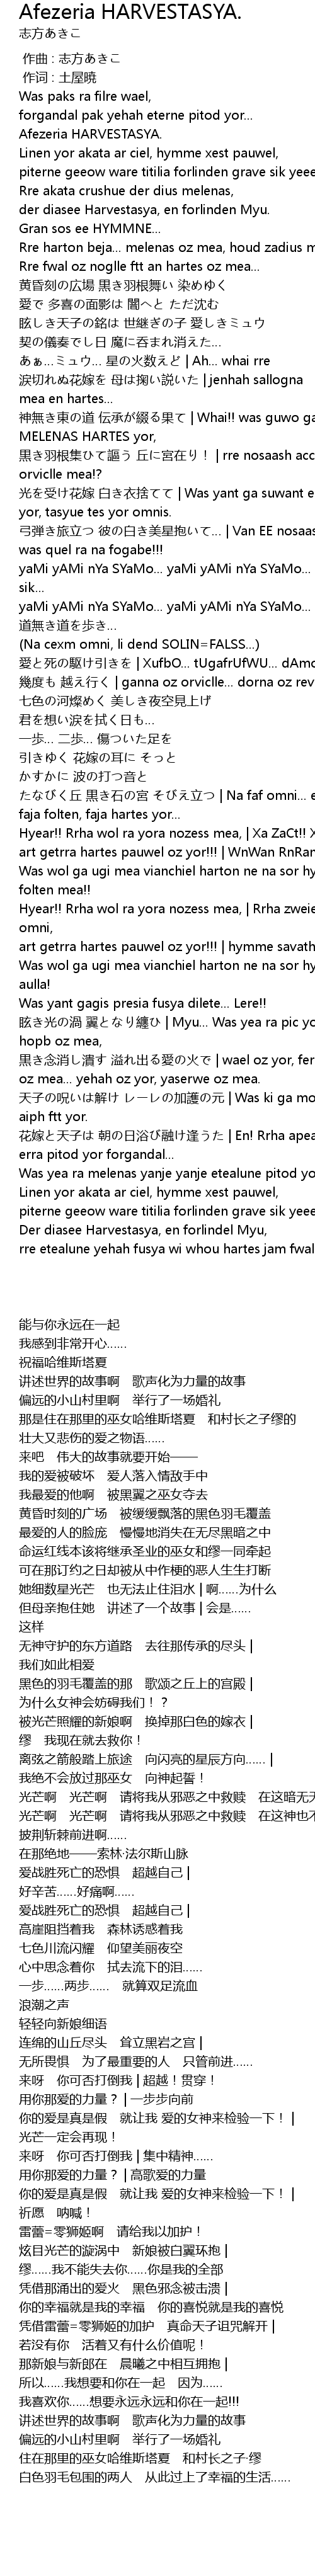 Afezeria Harvestasya Lyrics Follow Lyrics